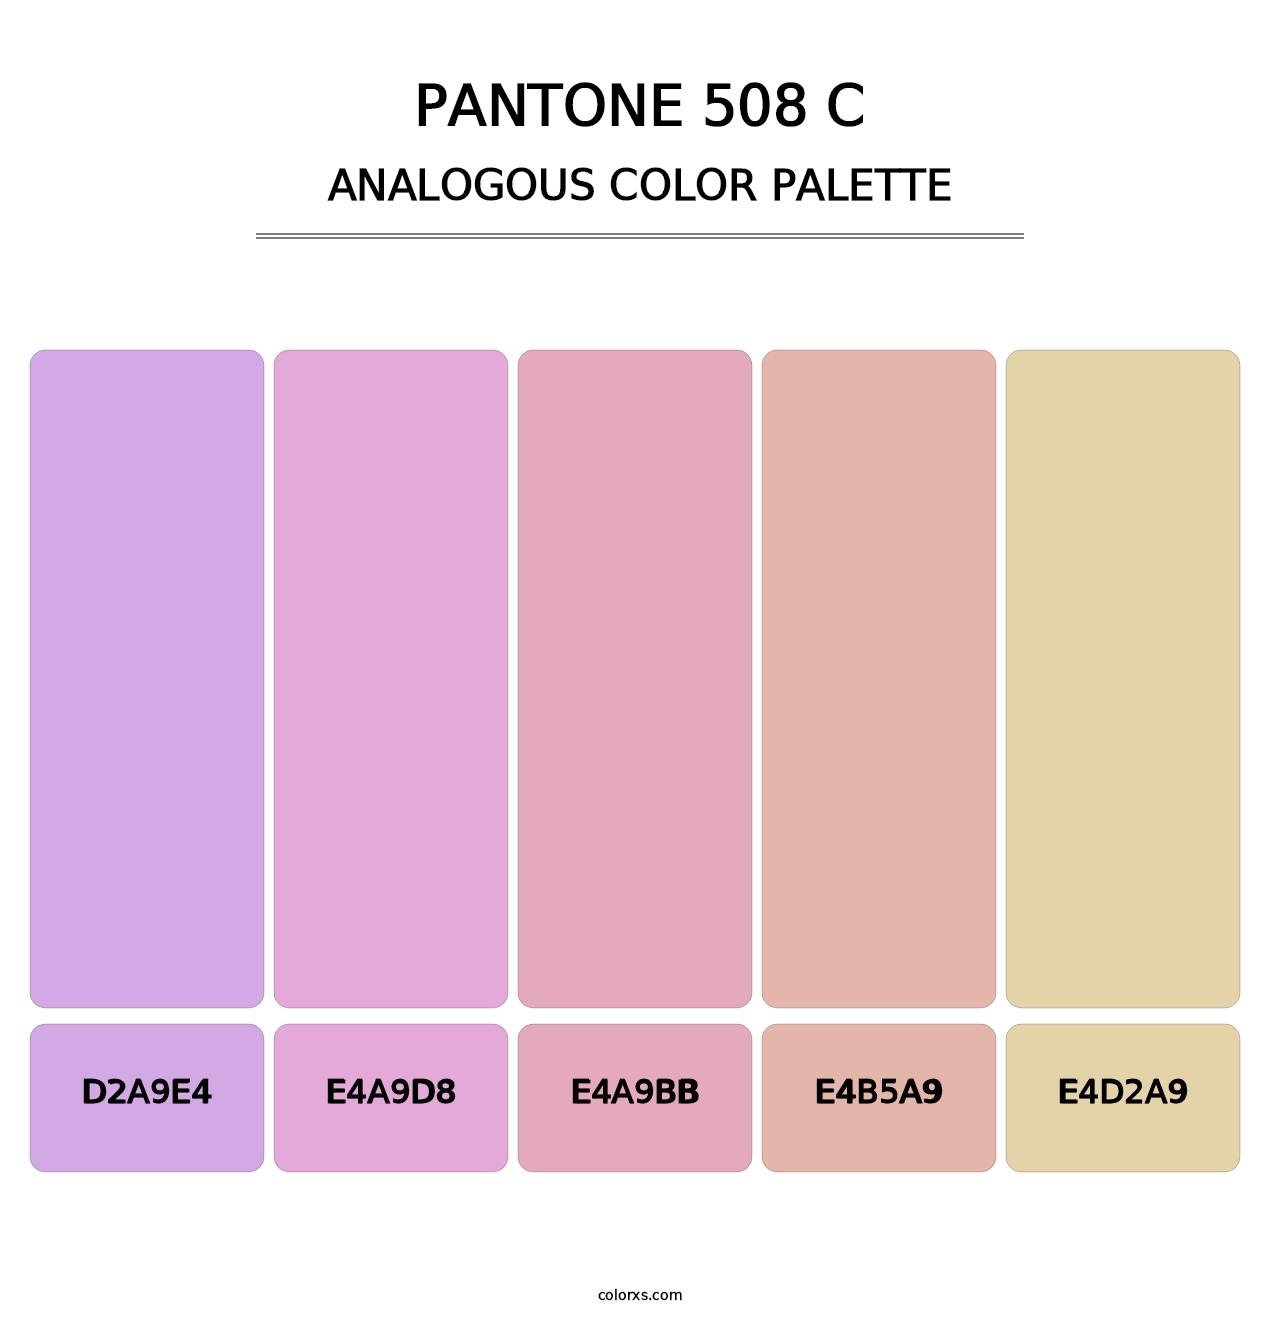 PANTONE 508 C - Analogous Color Palette